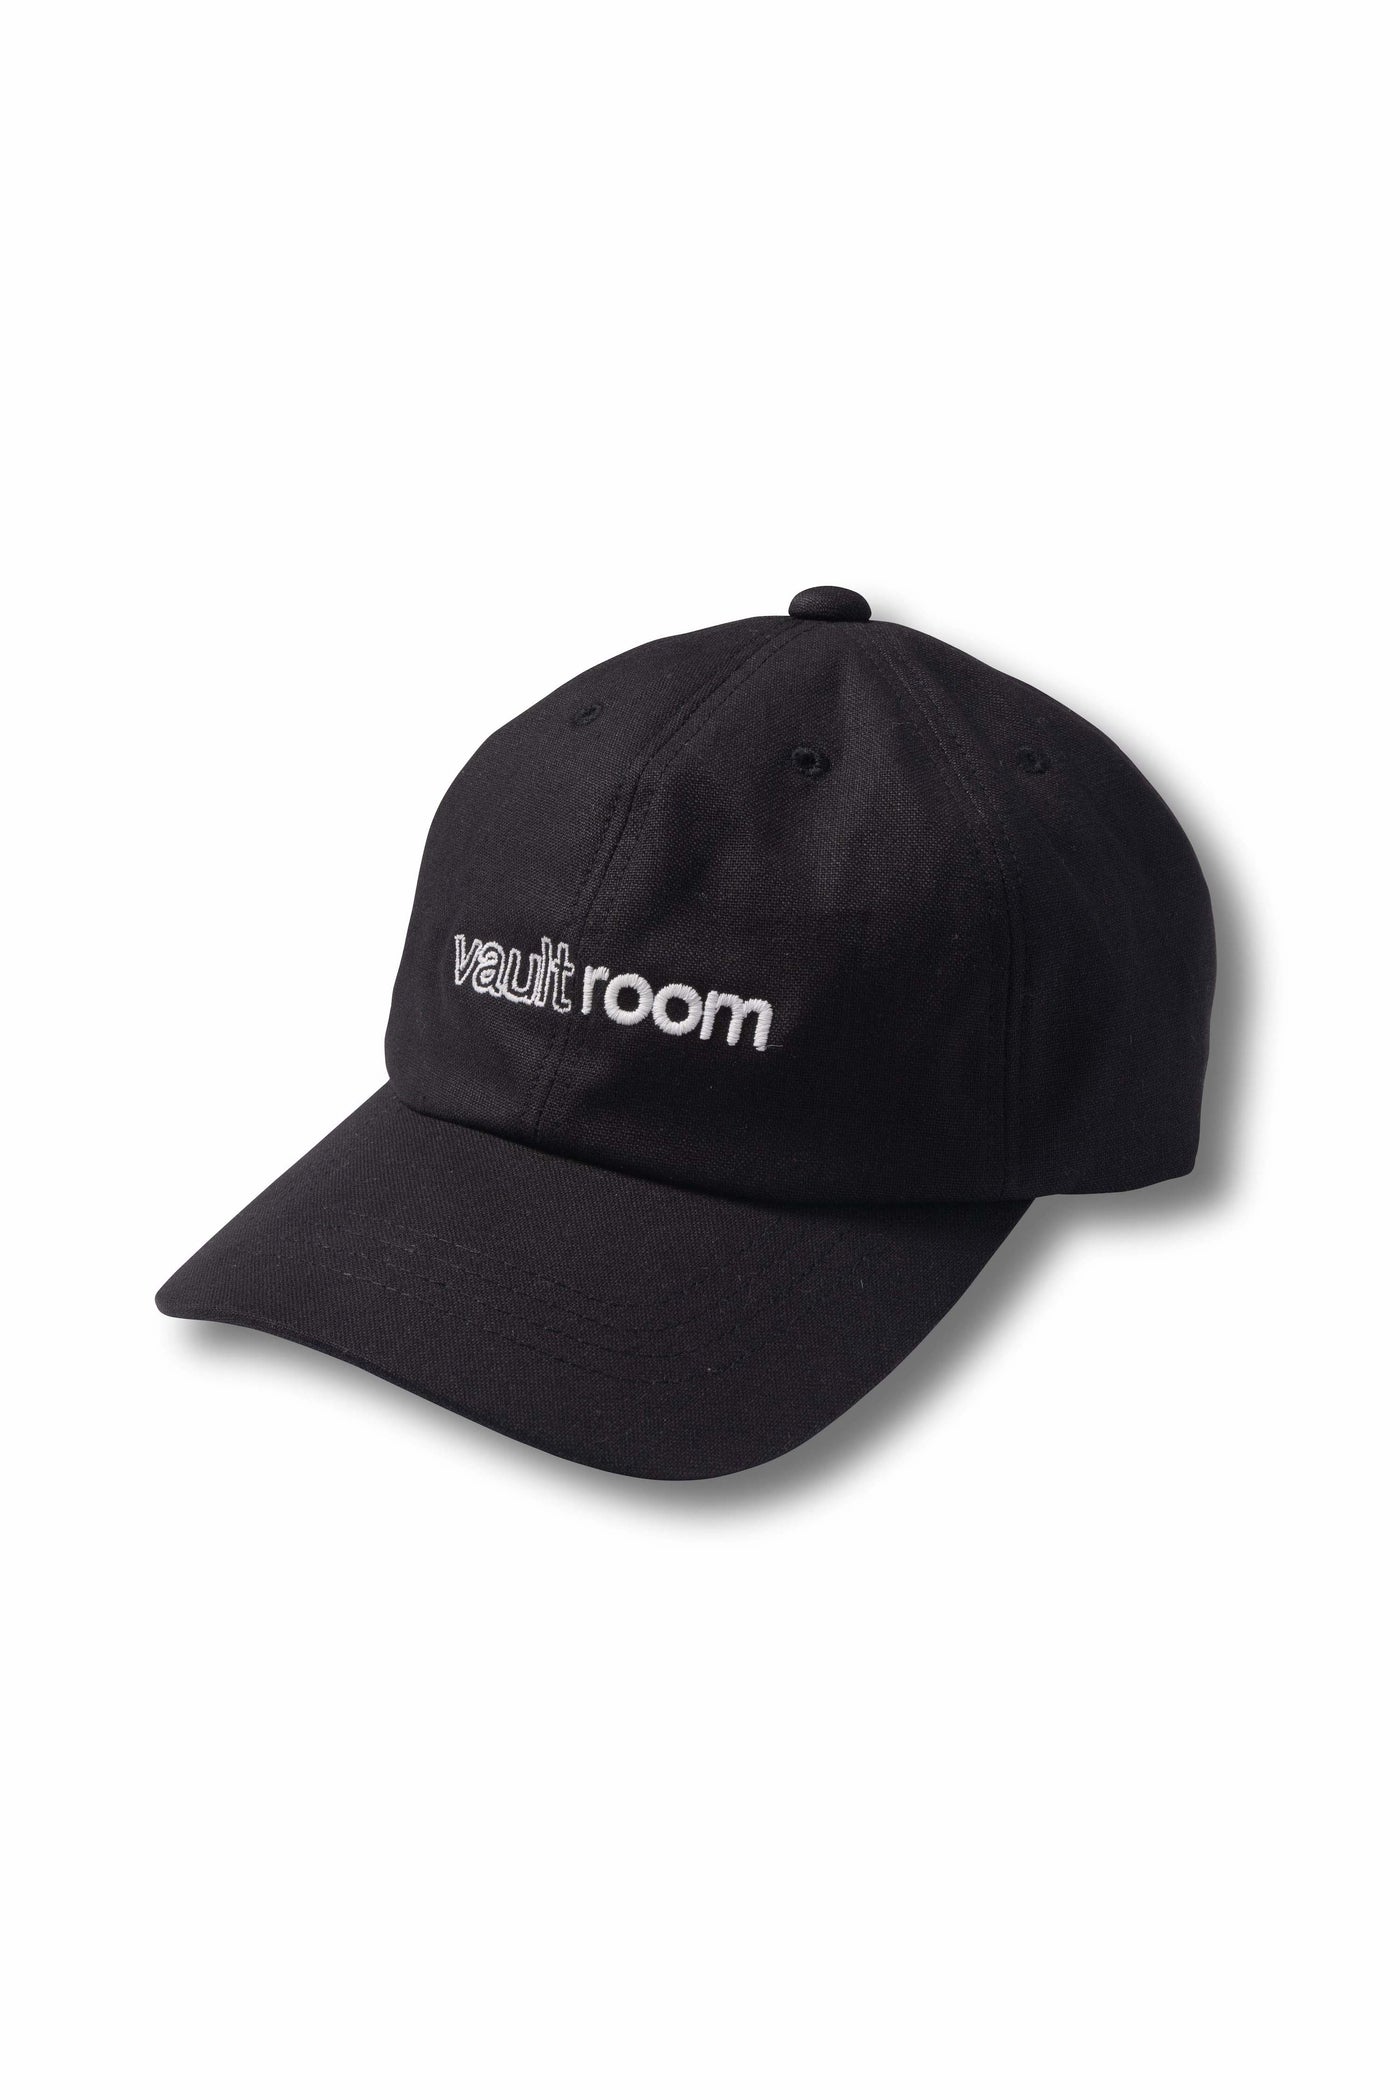 vaultroom LOGO CAP / BLK-